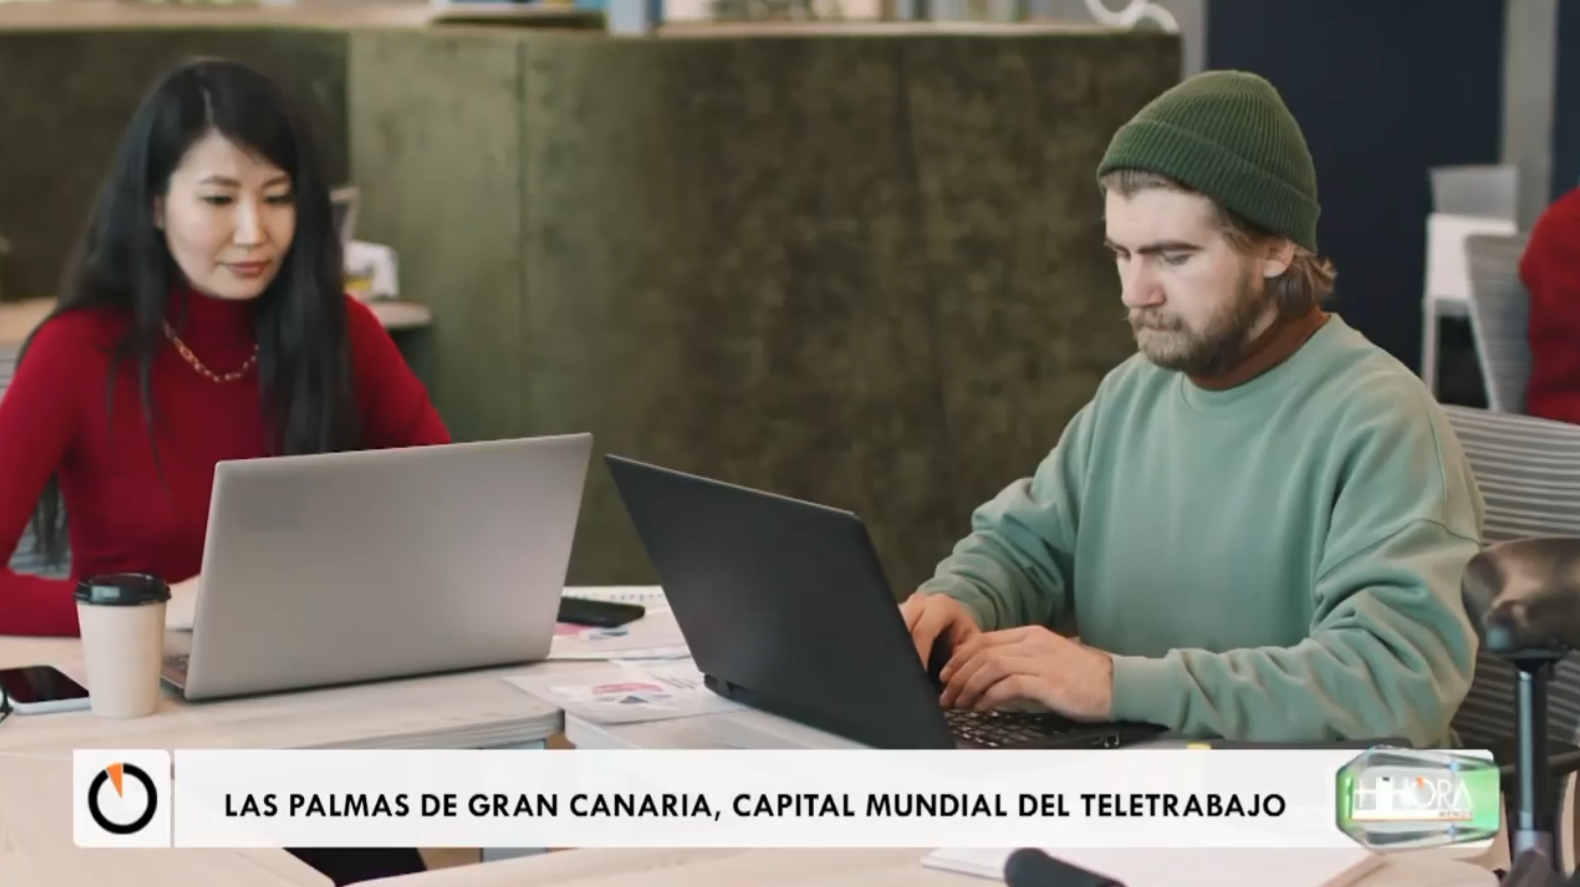 Las Palmas de Gran Canaria: la migliore città del mondo per tele-lavorare (video)